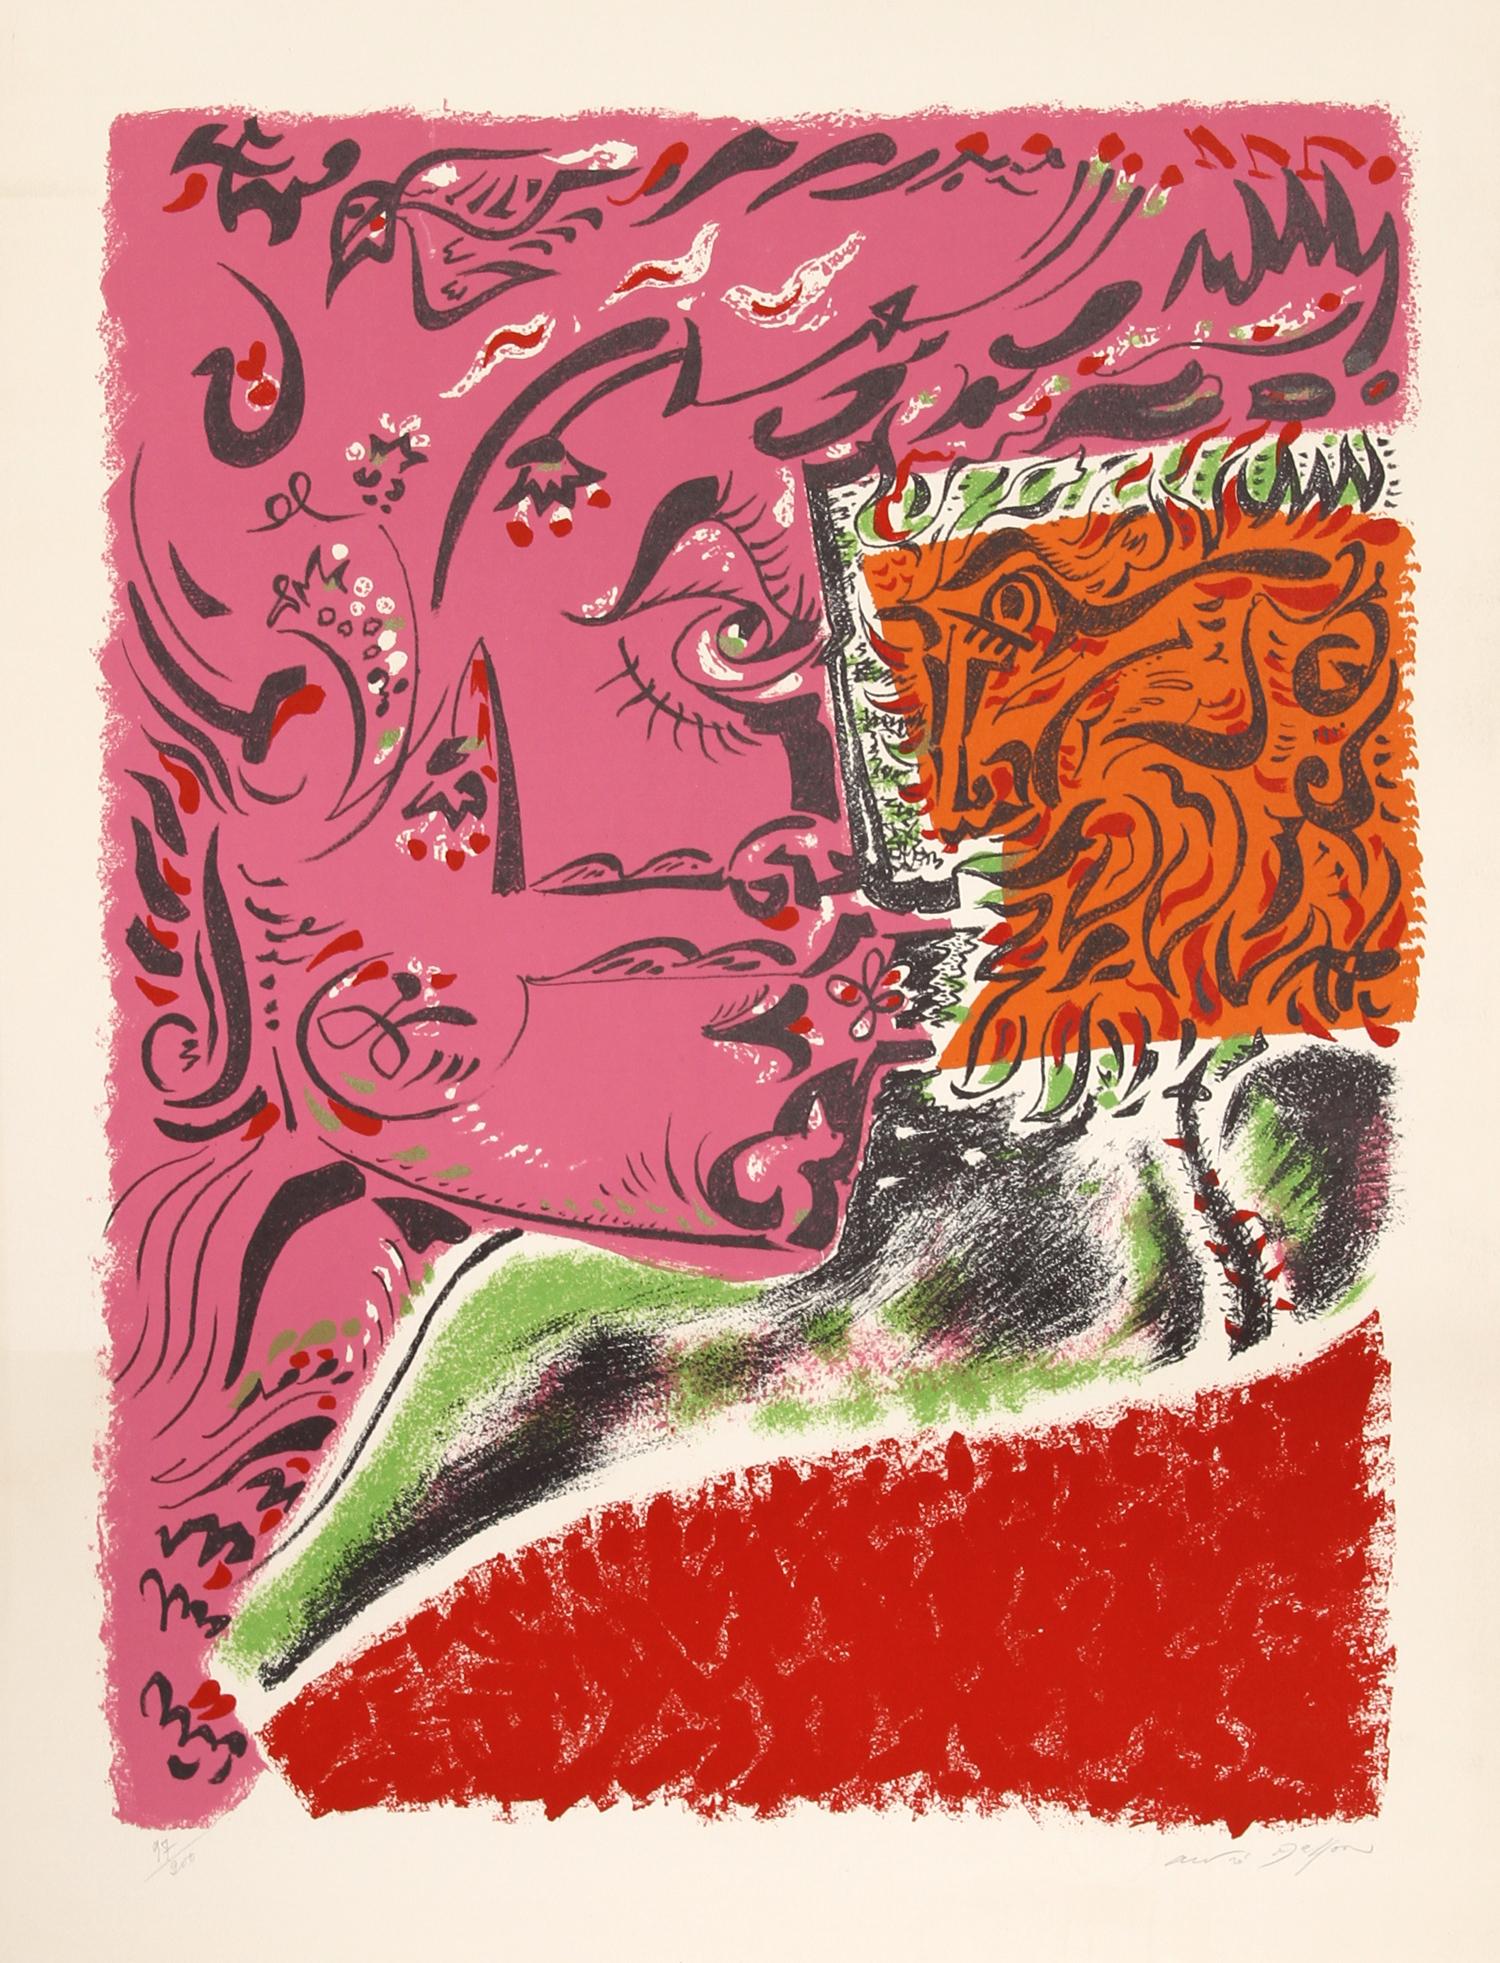 Artiste : Andre Masson, français (1896 - 1987)
Titre : Visage
Année : circa 1960
Médium : Lithographie sur Arches, Signé et numéroté au crayon
Edition : 97/200
Taille : 76,2 cm x 55,88 cm (30 in. x 22 in.)